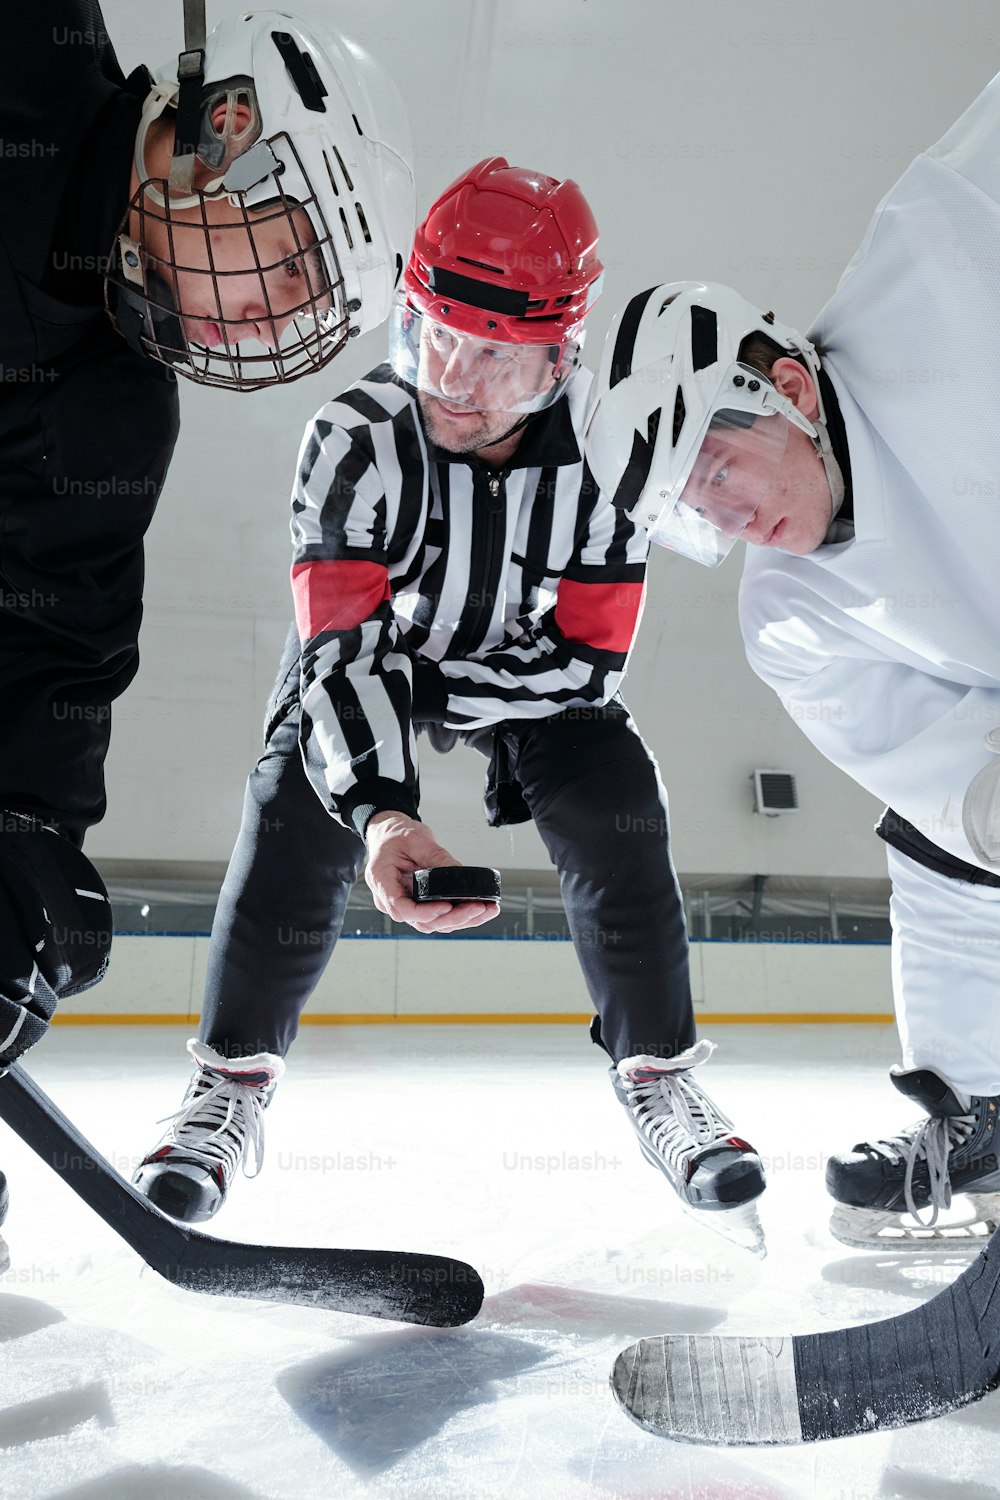 Eishockeyschiedsrichter hält den Puck über die Eisbahn, während zwei Rivalen mit Stöcken ihn betrachten, während sie sich darauf vorbereiten, ihn während des Trainings zu schießen